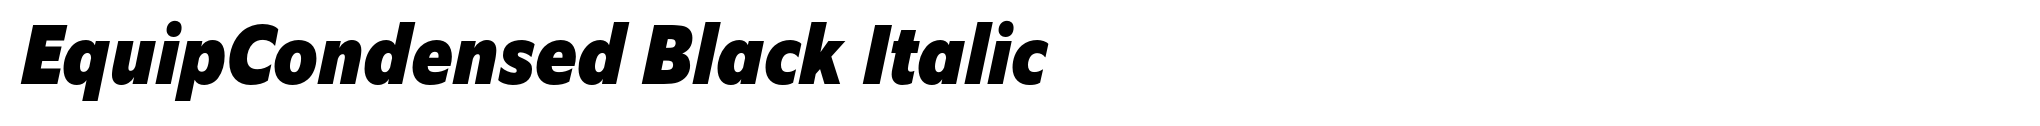 EquipCondensed Black Italic image